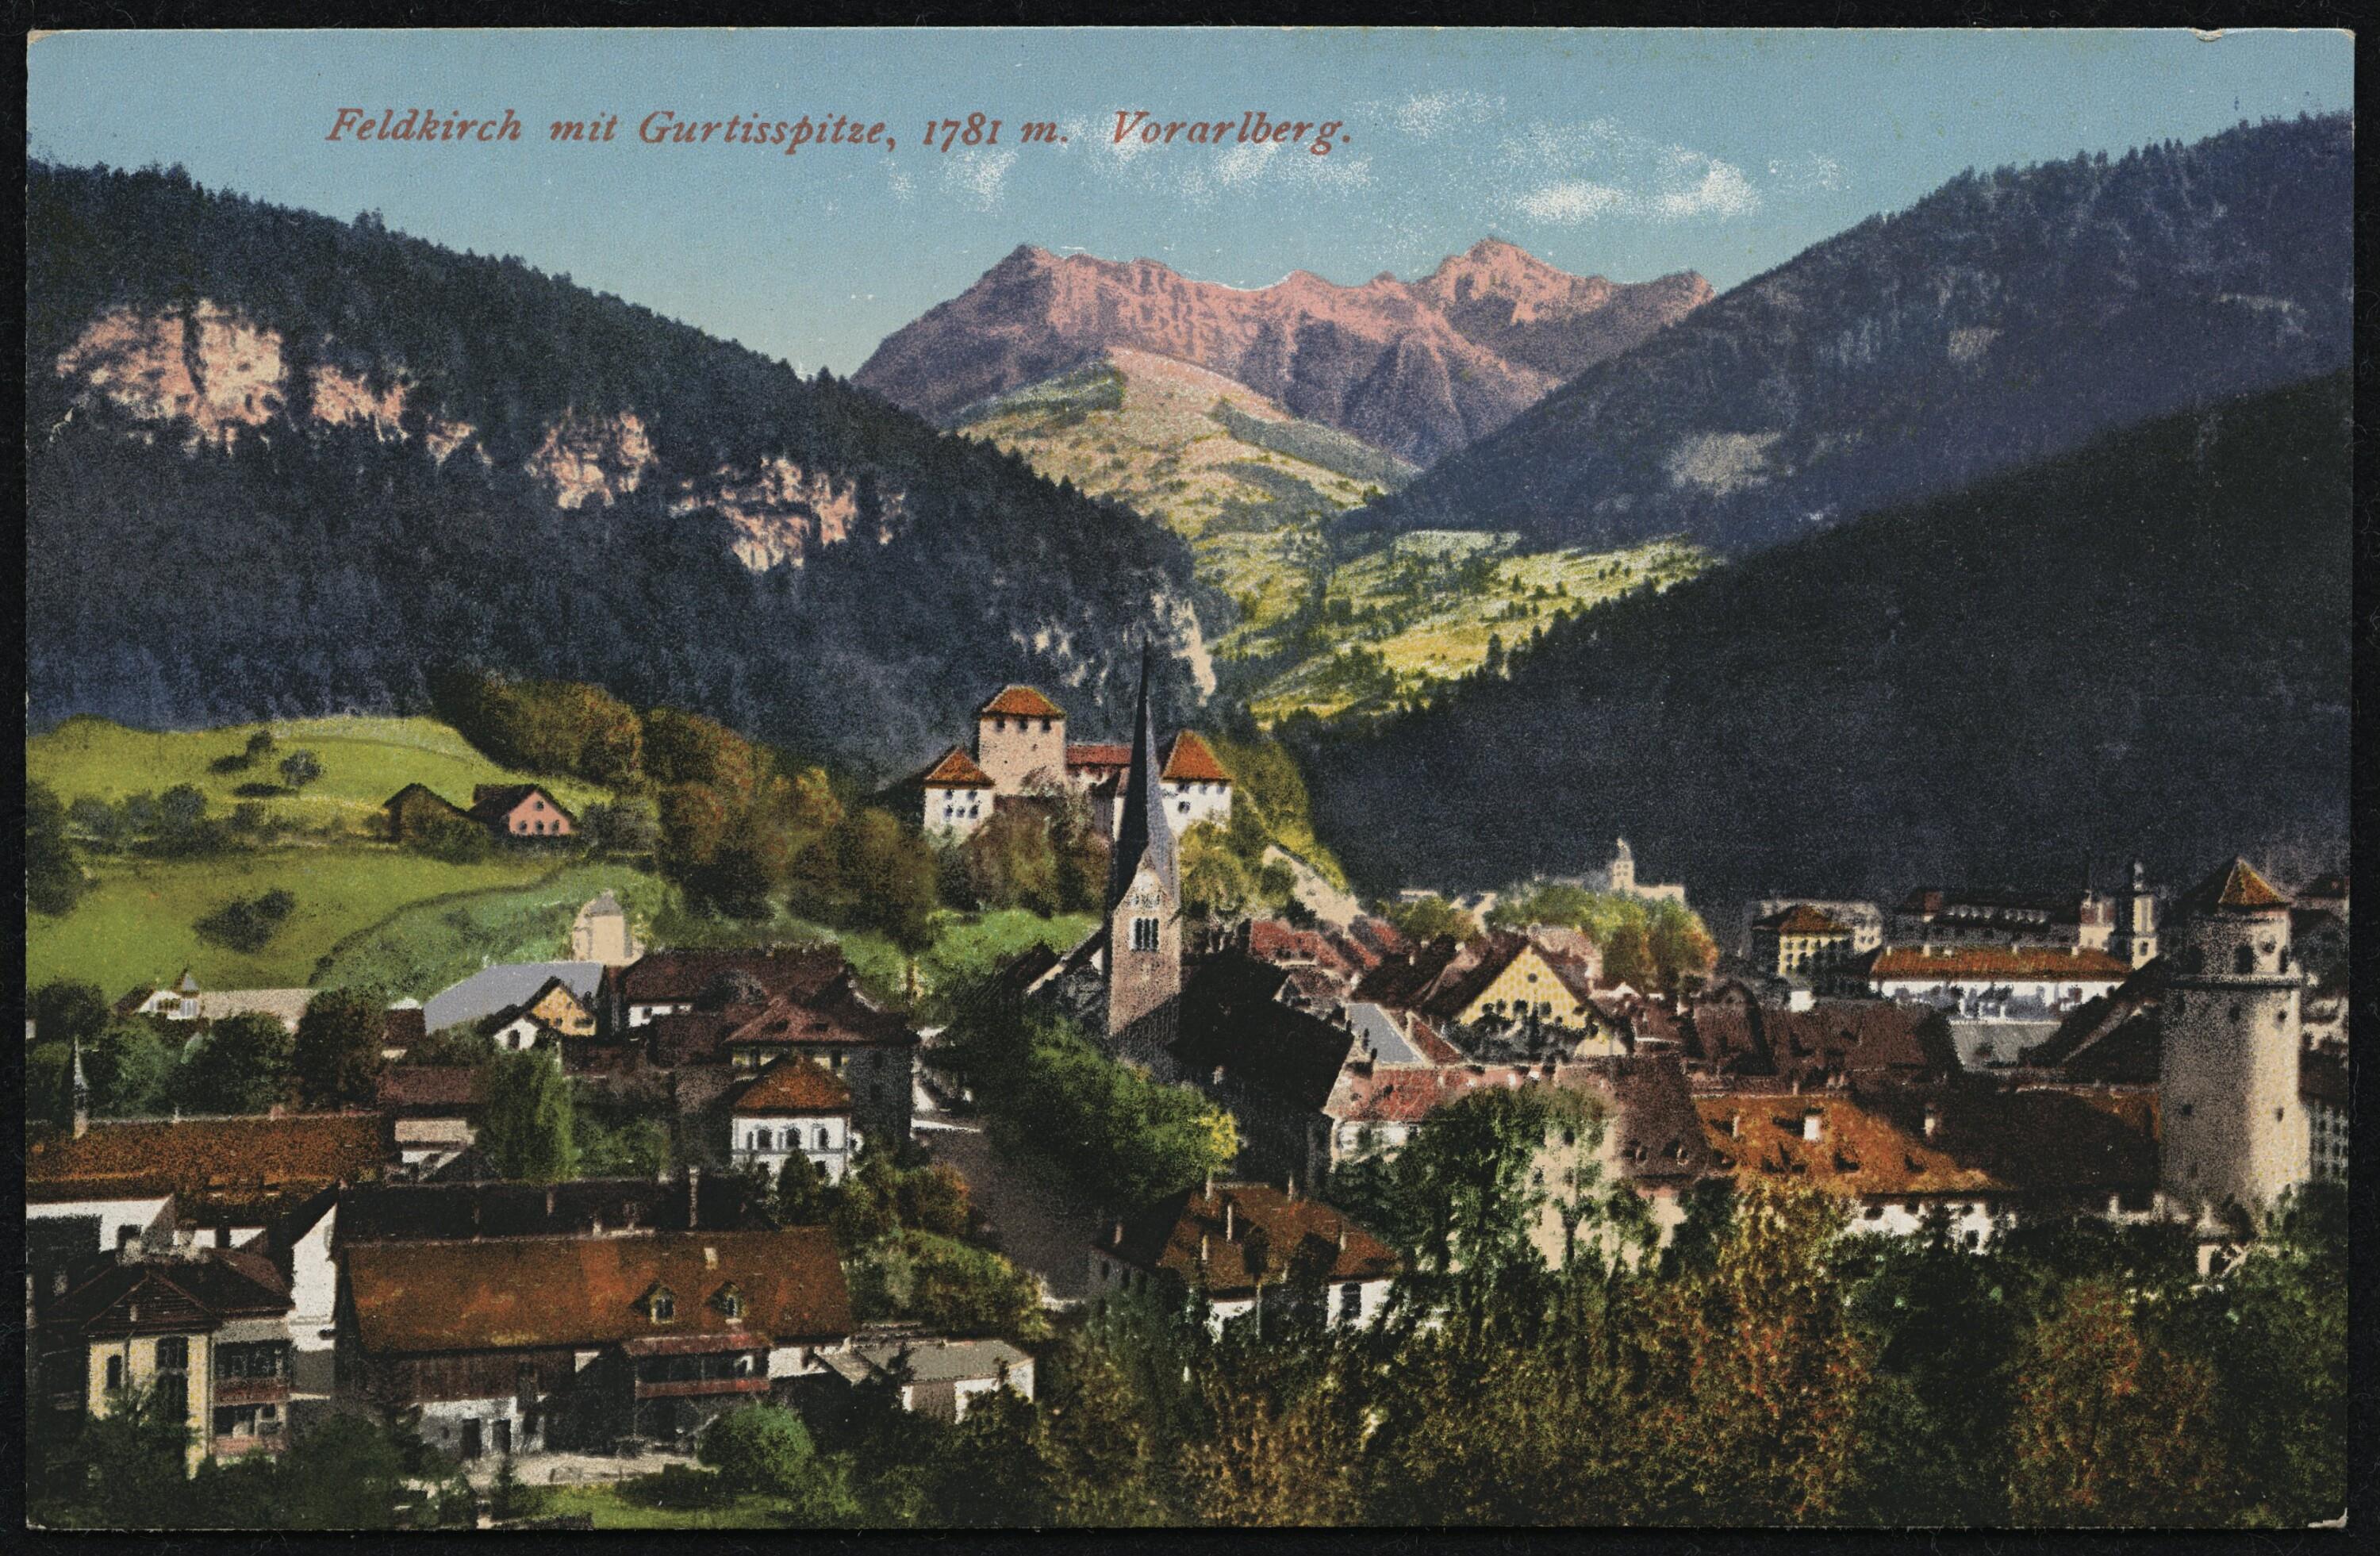 Feldkirch mit Gurtisspitze, 1781 m. Vorarlberg></div>


    <hr>
    <div class=